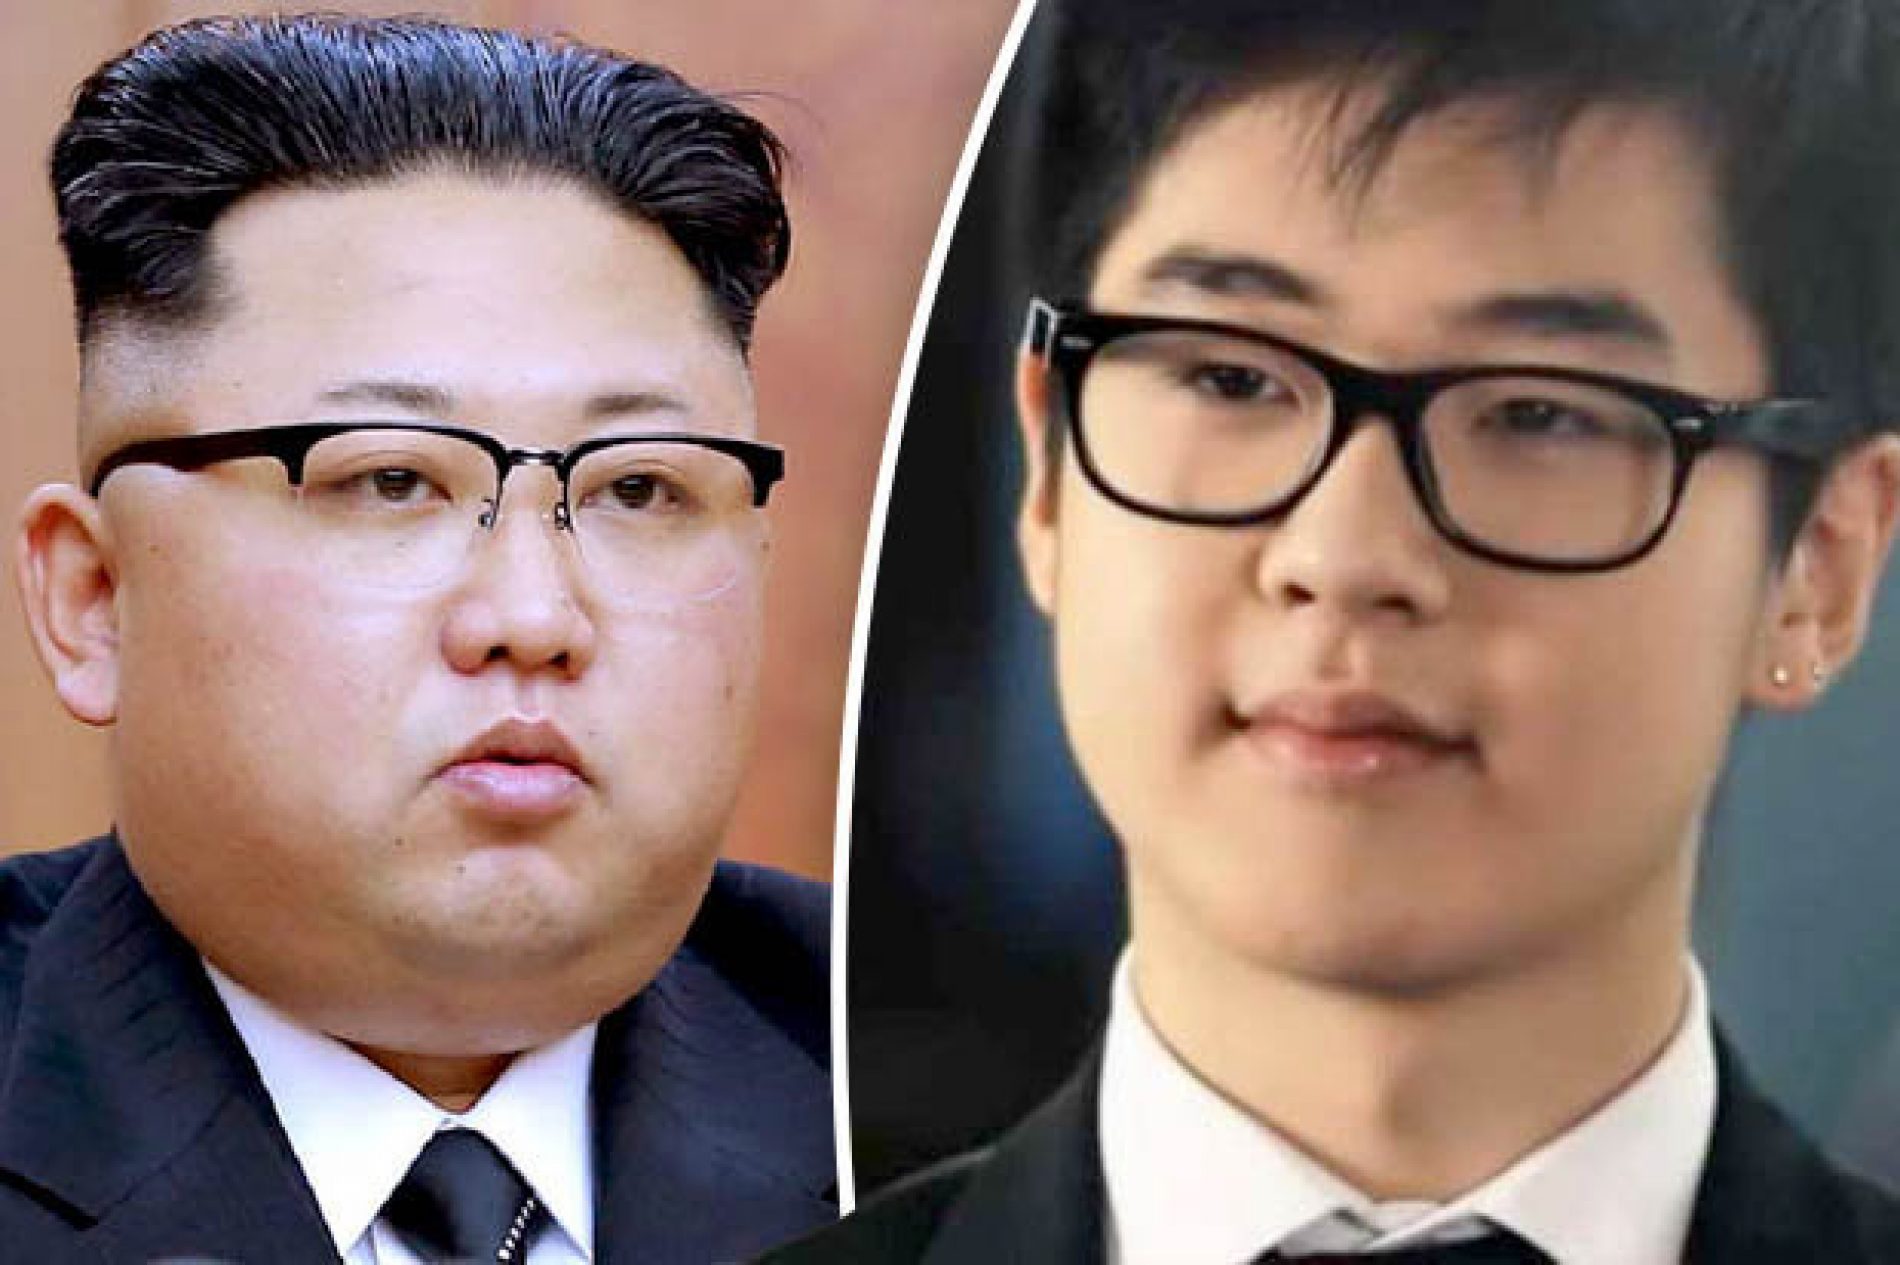 Hoće li bosanski student Kim Han Sol postati novi lider S. Koreje?